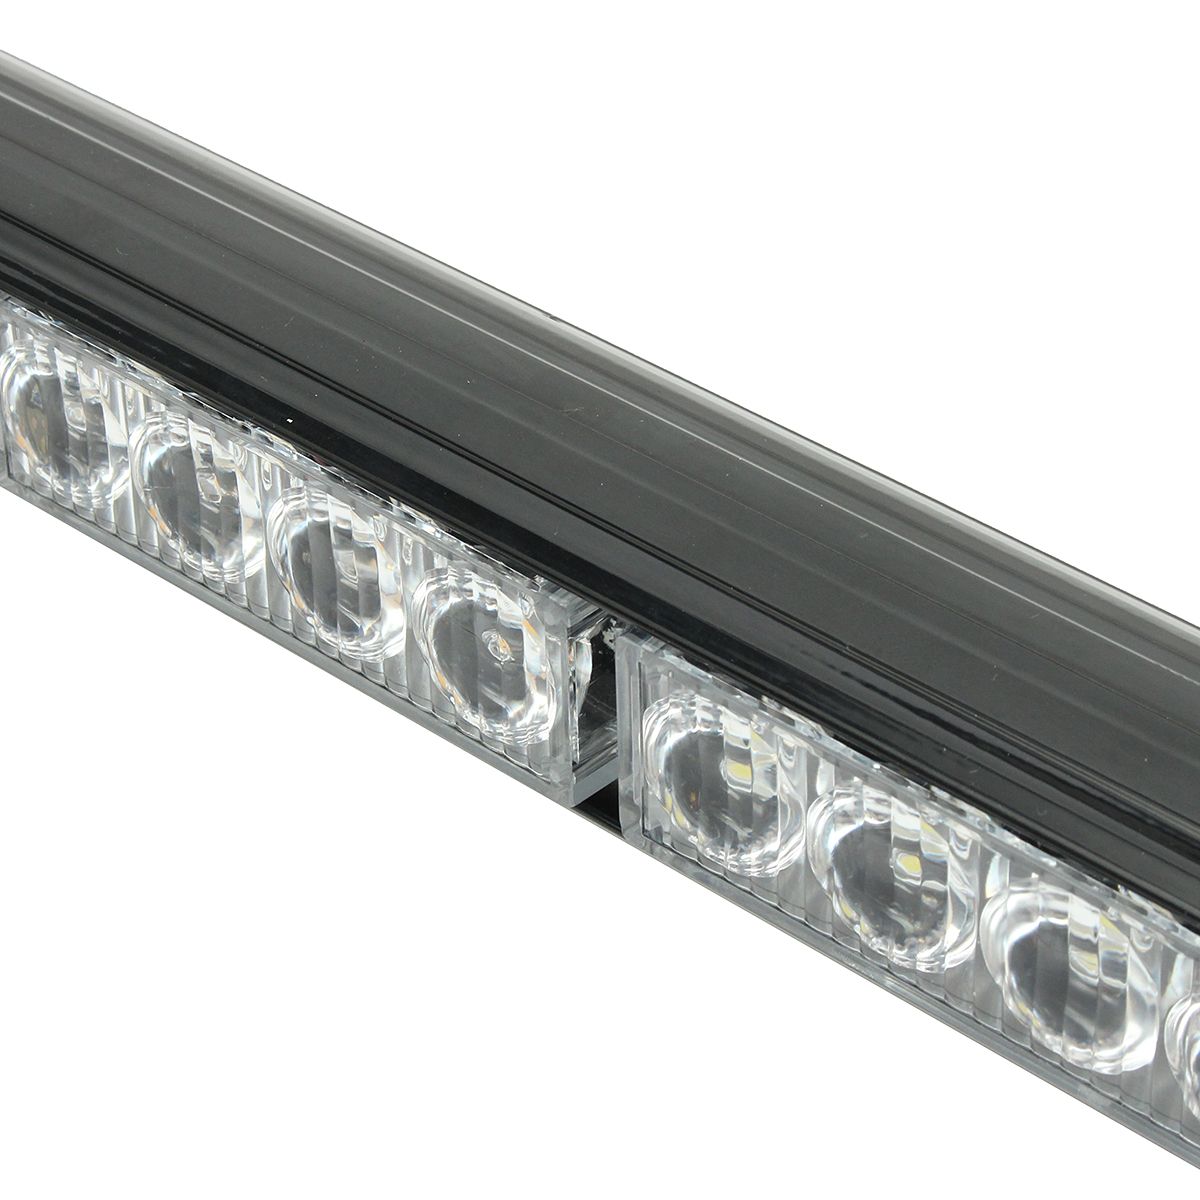 36Inch-32-LED-Emergency-Warning-Light-Bar-Traffic-Advisor-Strobe-Lamp-AmberWhite-Dual-Color-12V-for--1609249